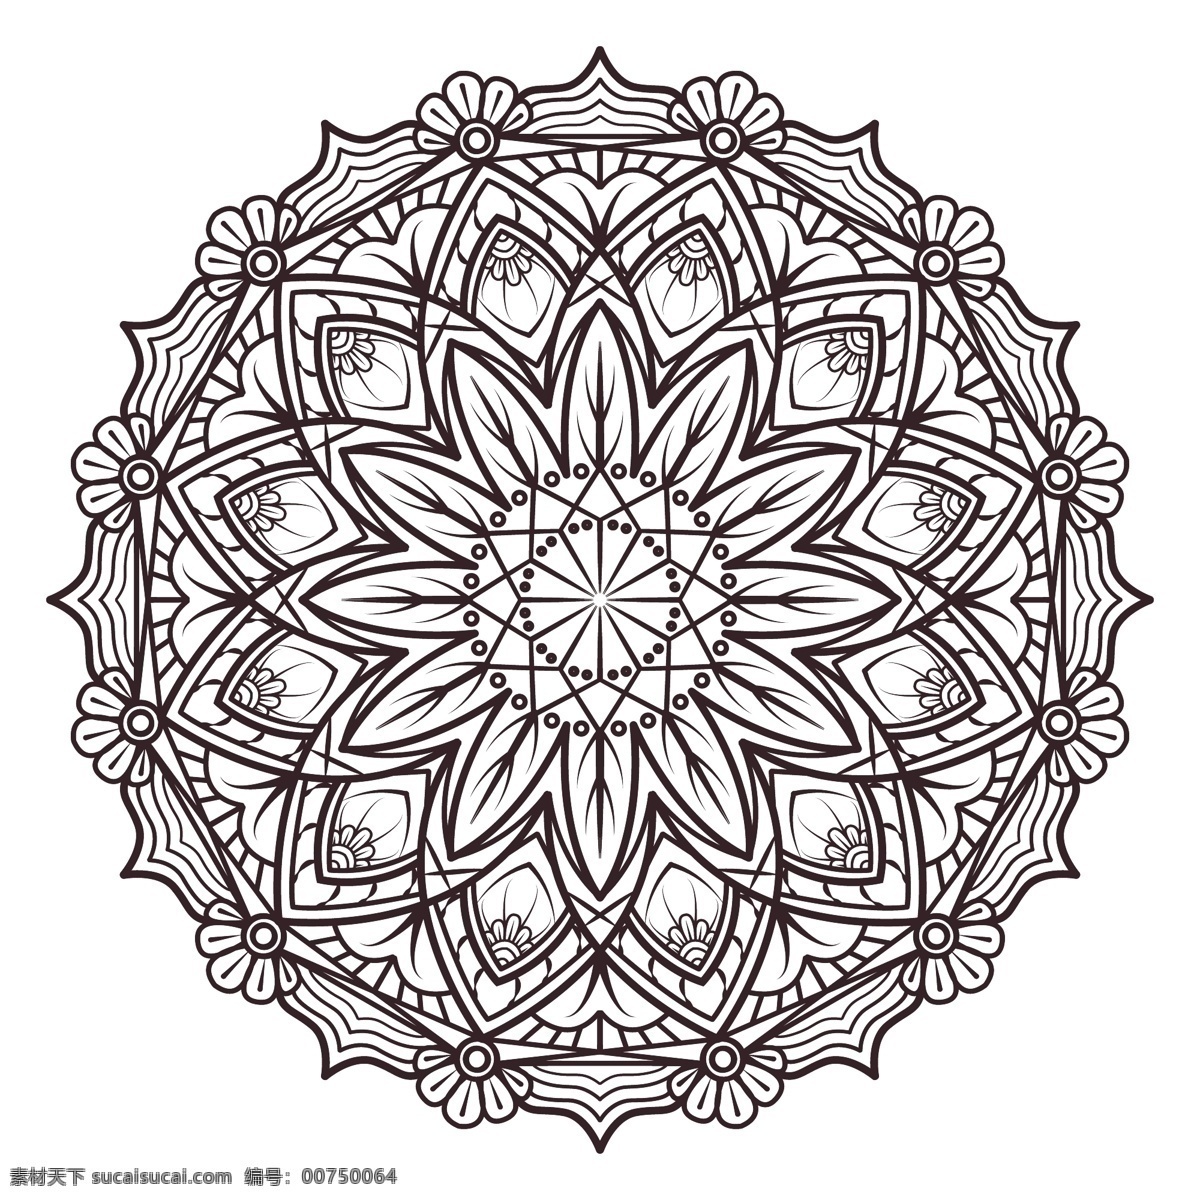 黑白 曼陀罗 花卉 抽象 装饰 黑色 阿拉伯 印度 形状 伊斯兰教 白色 花卉装饰 东方 象征 抽象的形状